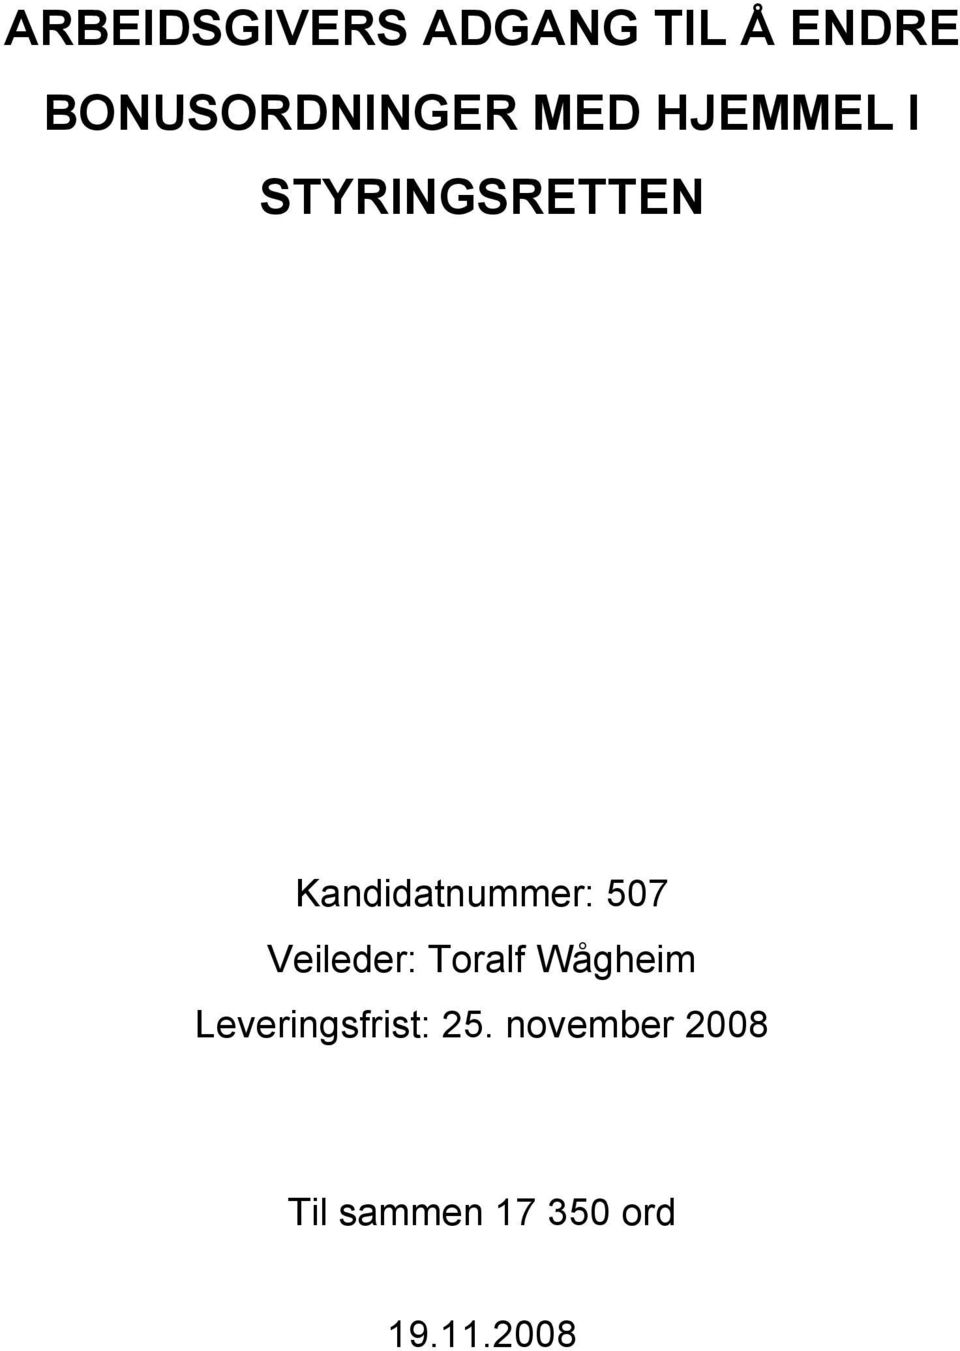 Kandidatnummer: 507 Veileder: Toralf Wågheim